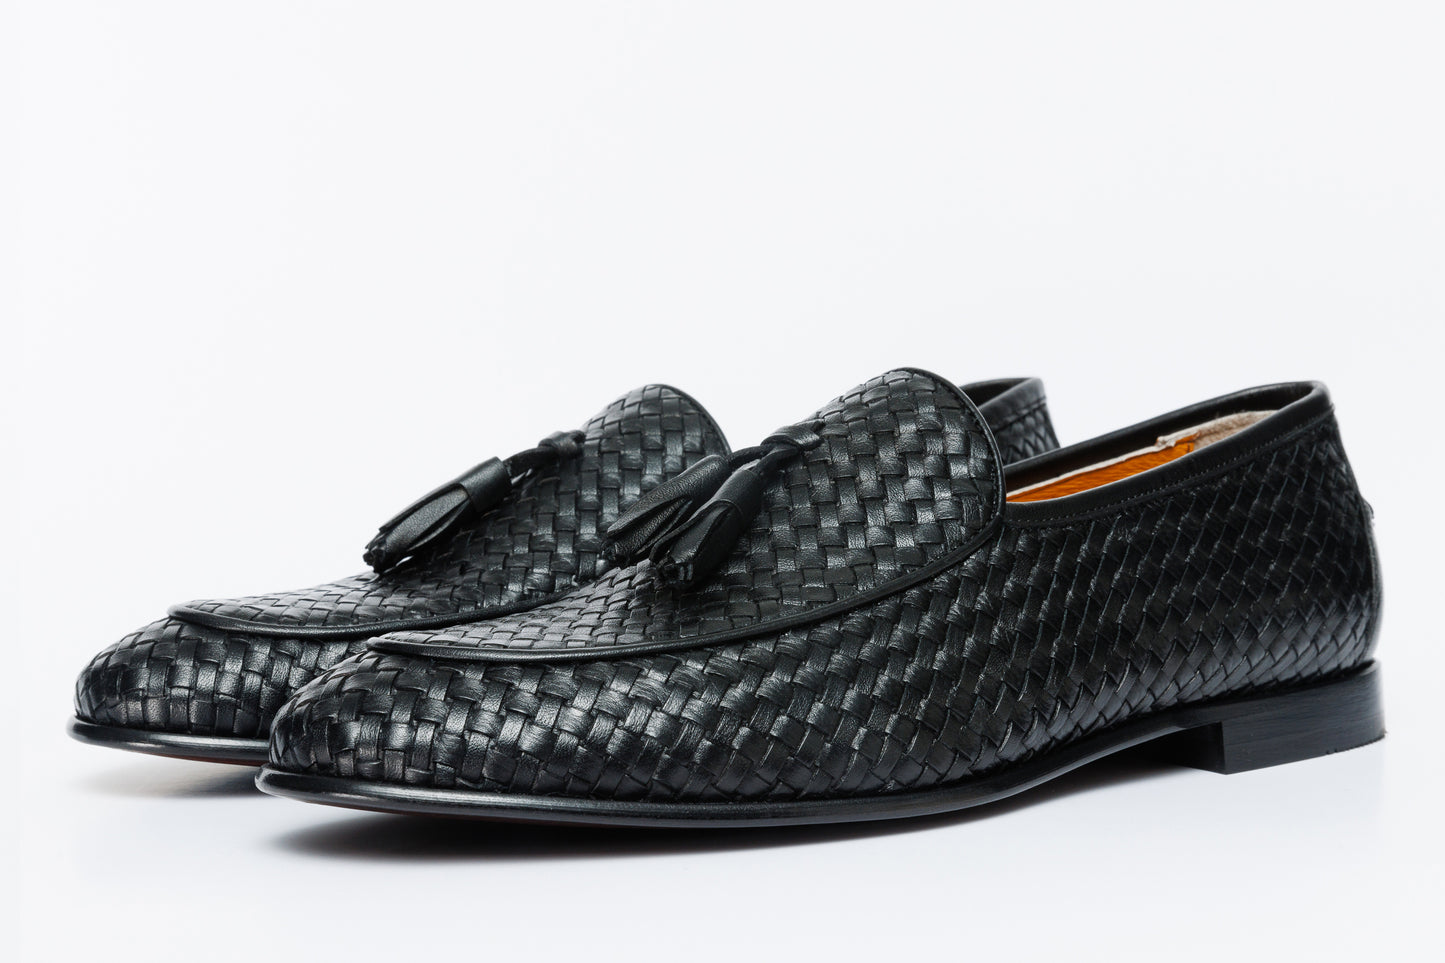 The Mclean Shoe Black Leather Woven Tassel Loafer Men  Shoe